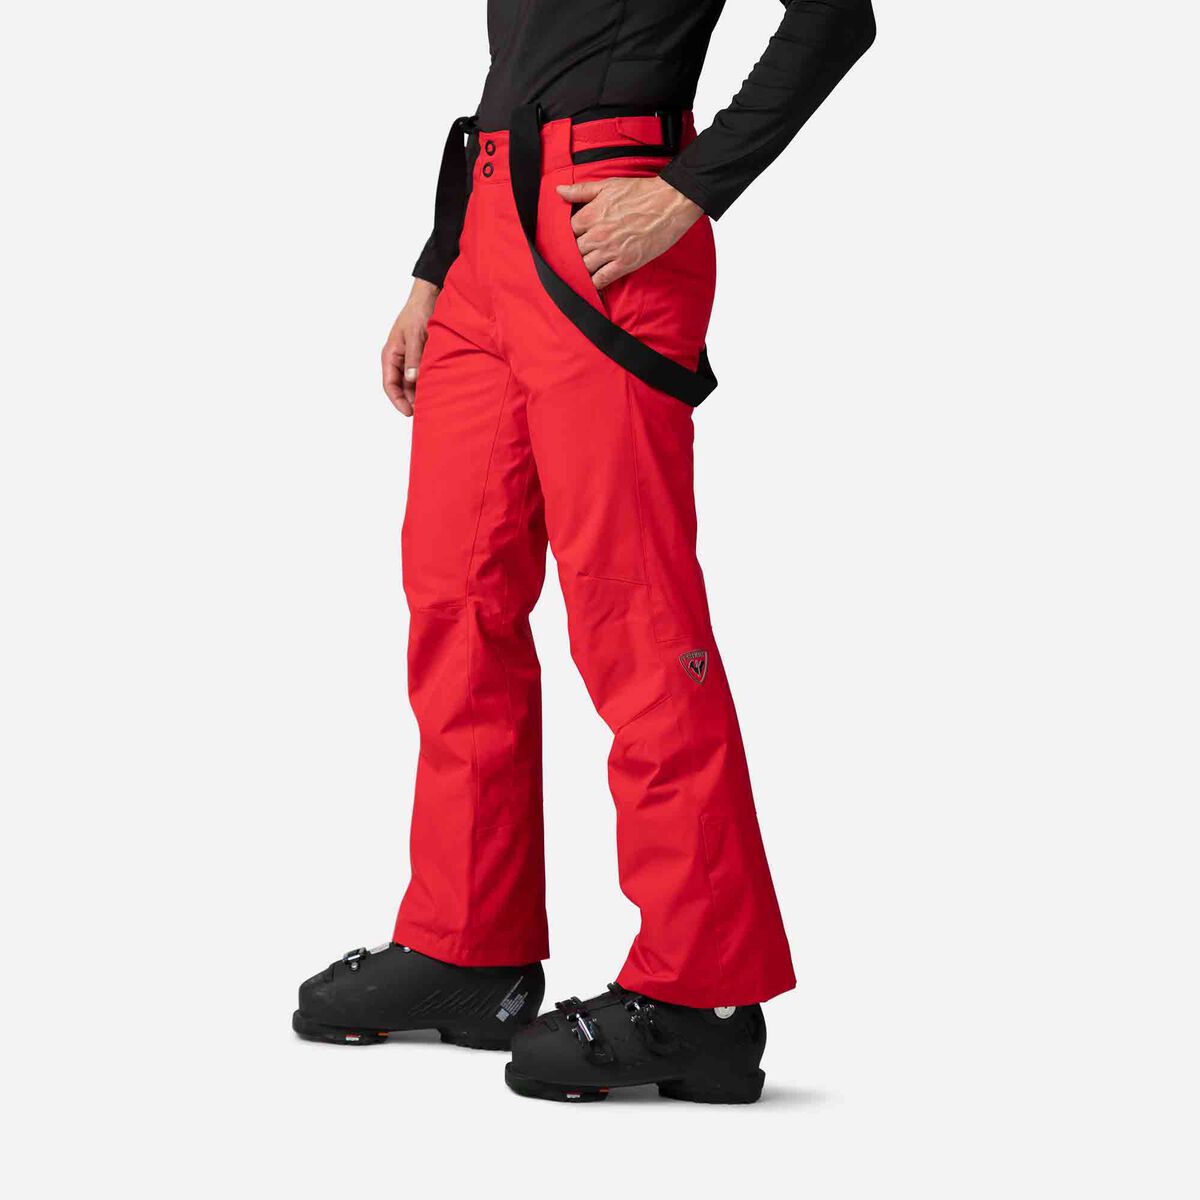 Rossignol Ski Pant - Pantalones de esquí - Hombre